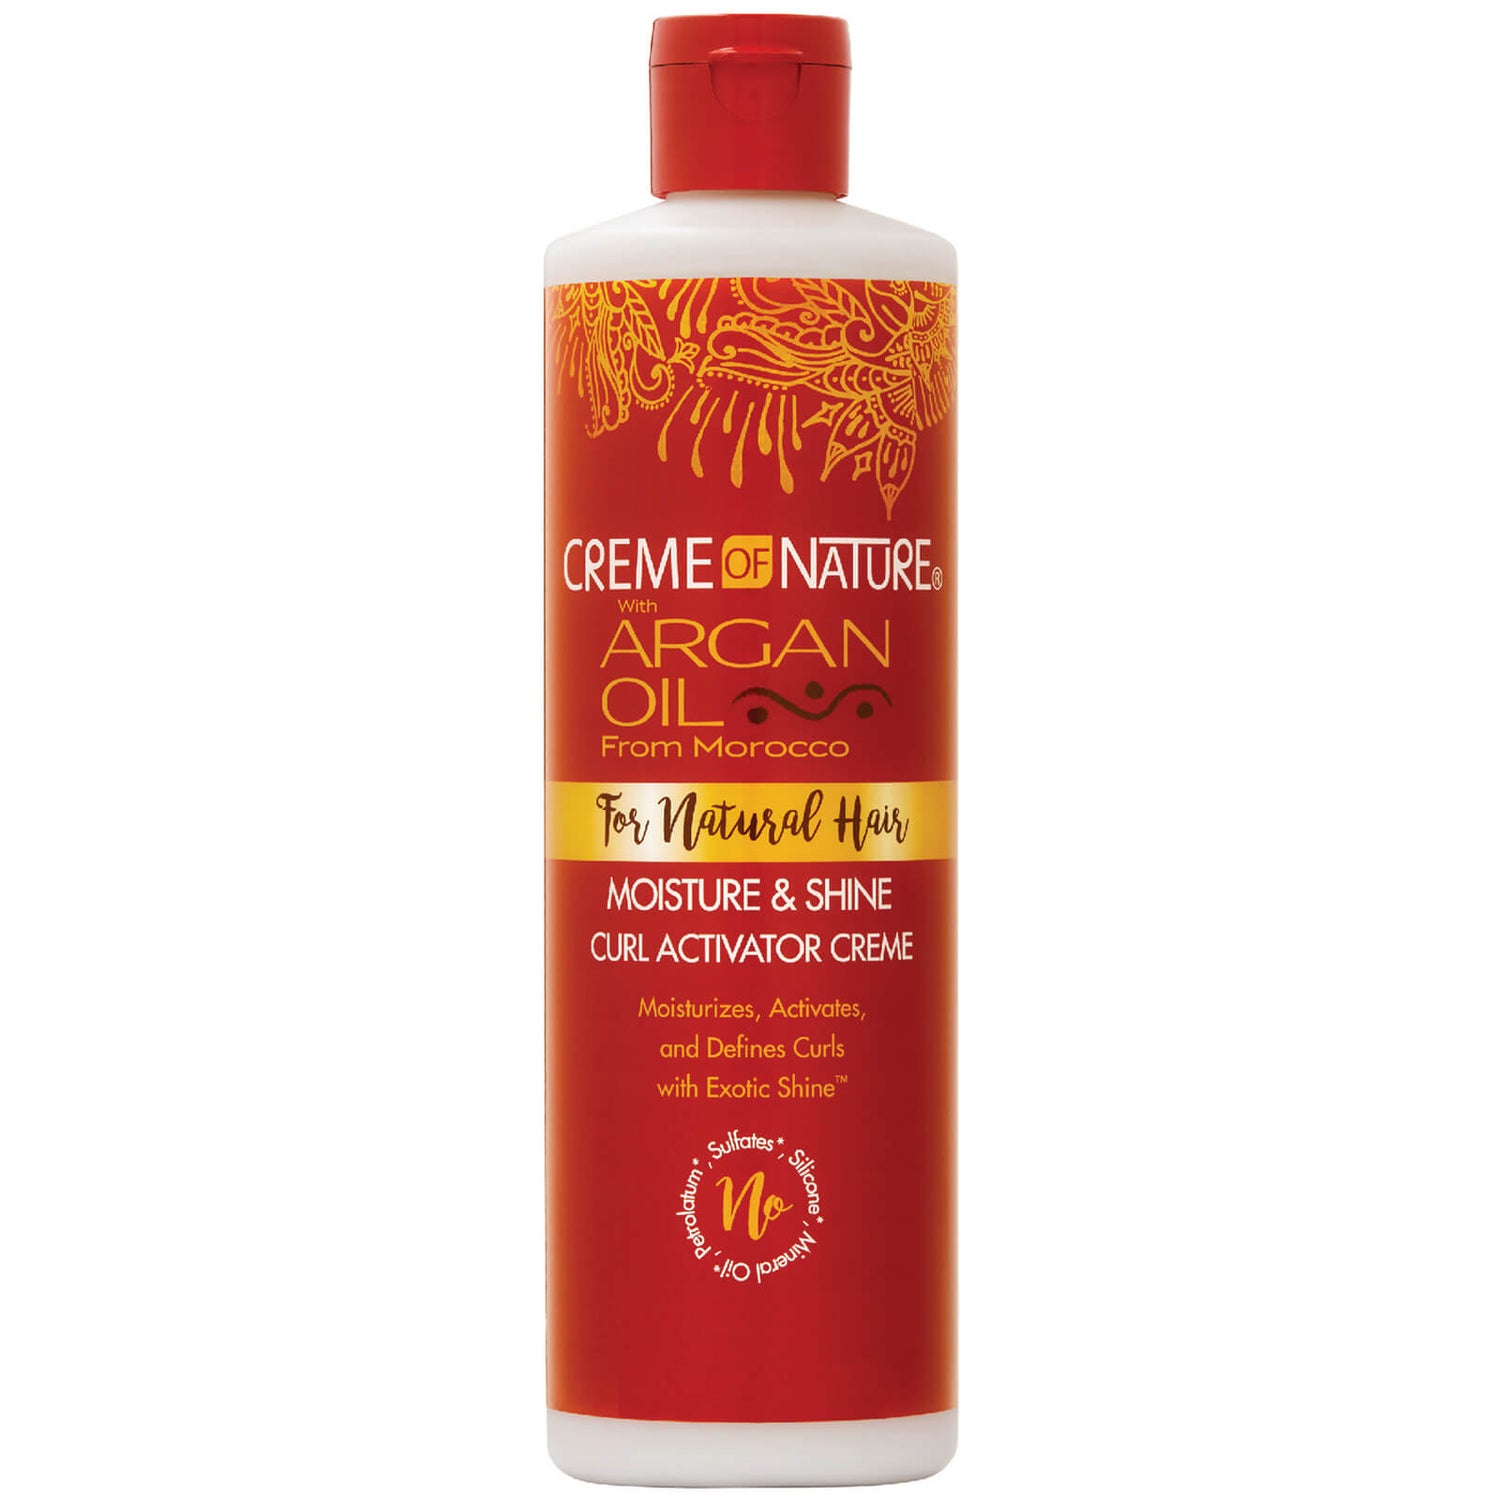 Crème of Nature Argan Oil Moisture and Shine Curl Activator Créme 354ml